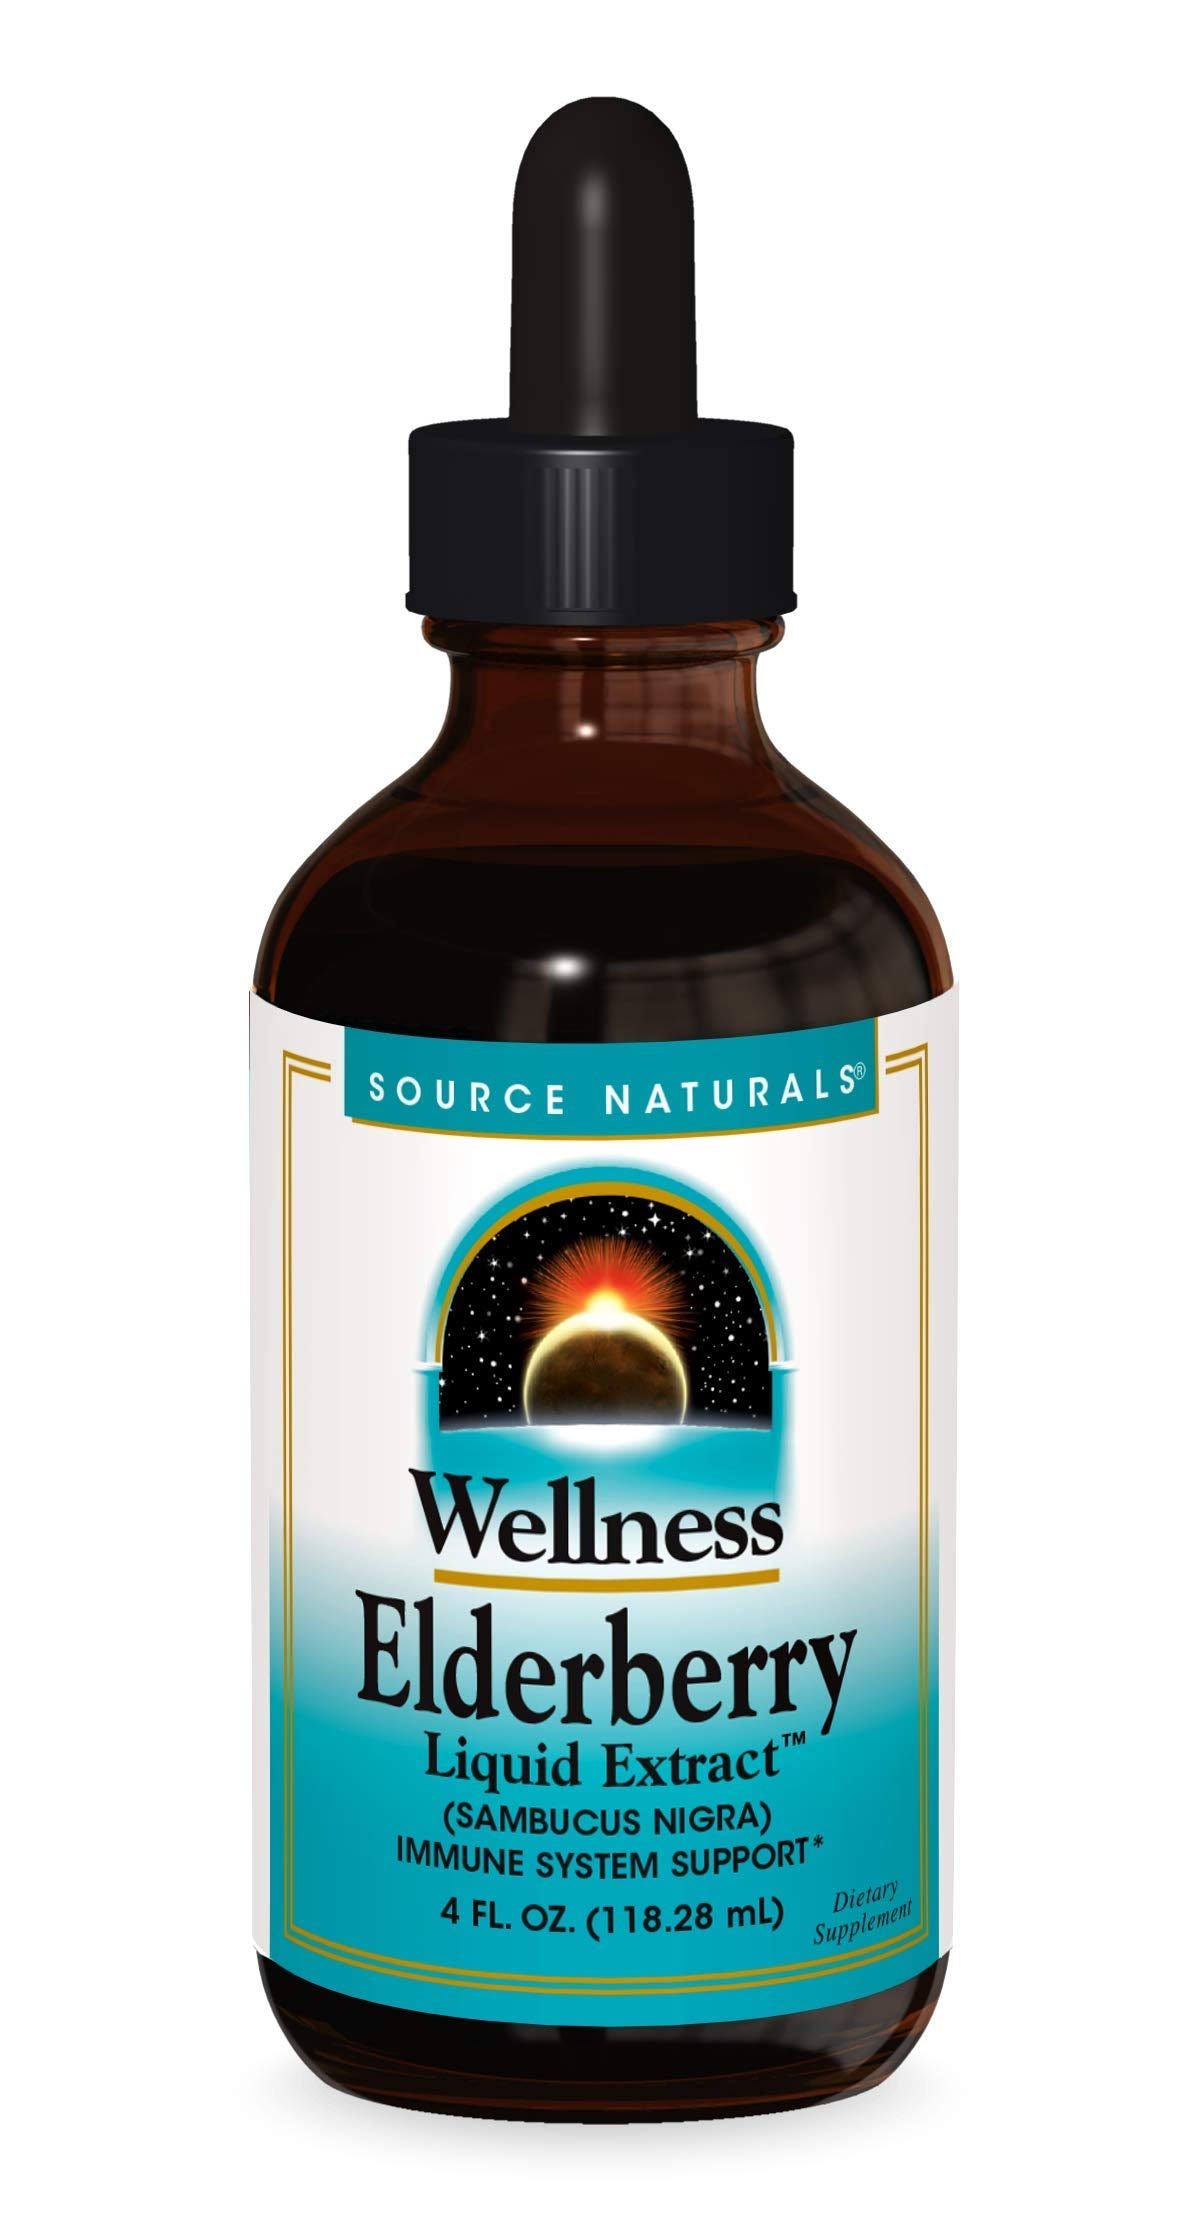 Source Naturals Wellness Elderberry Liquid Extract